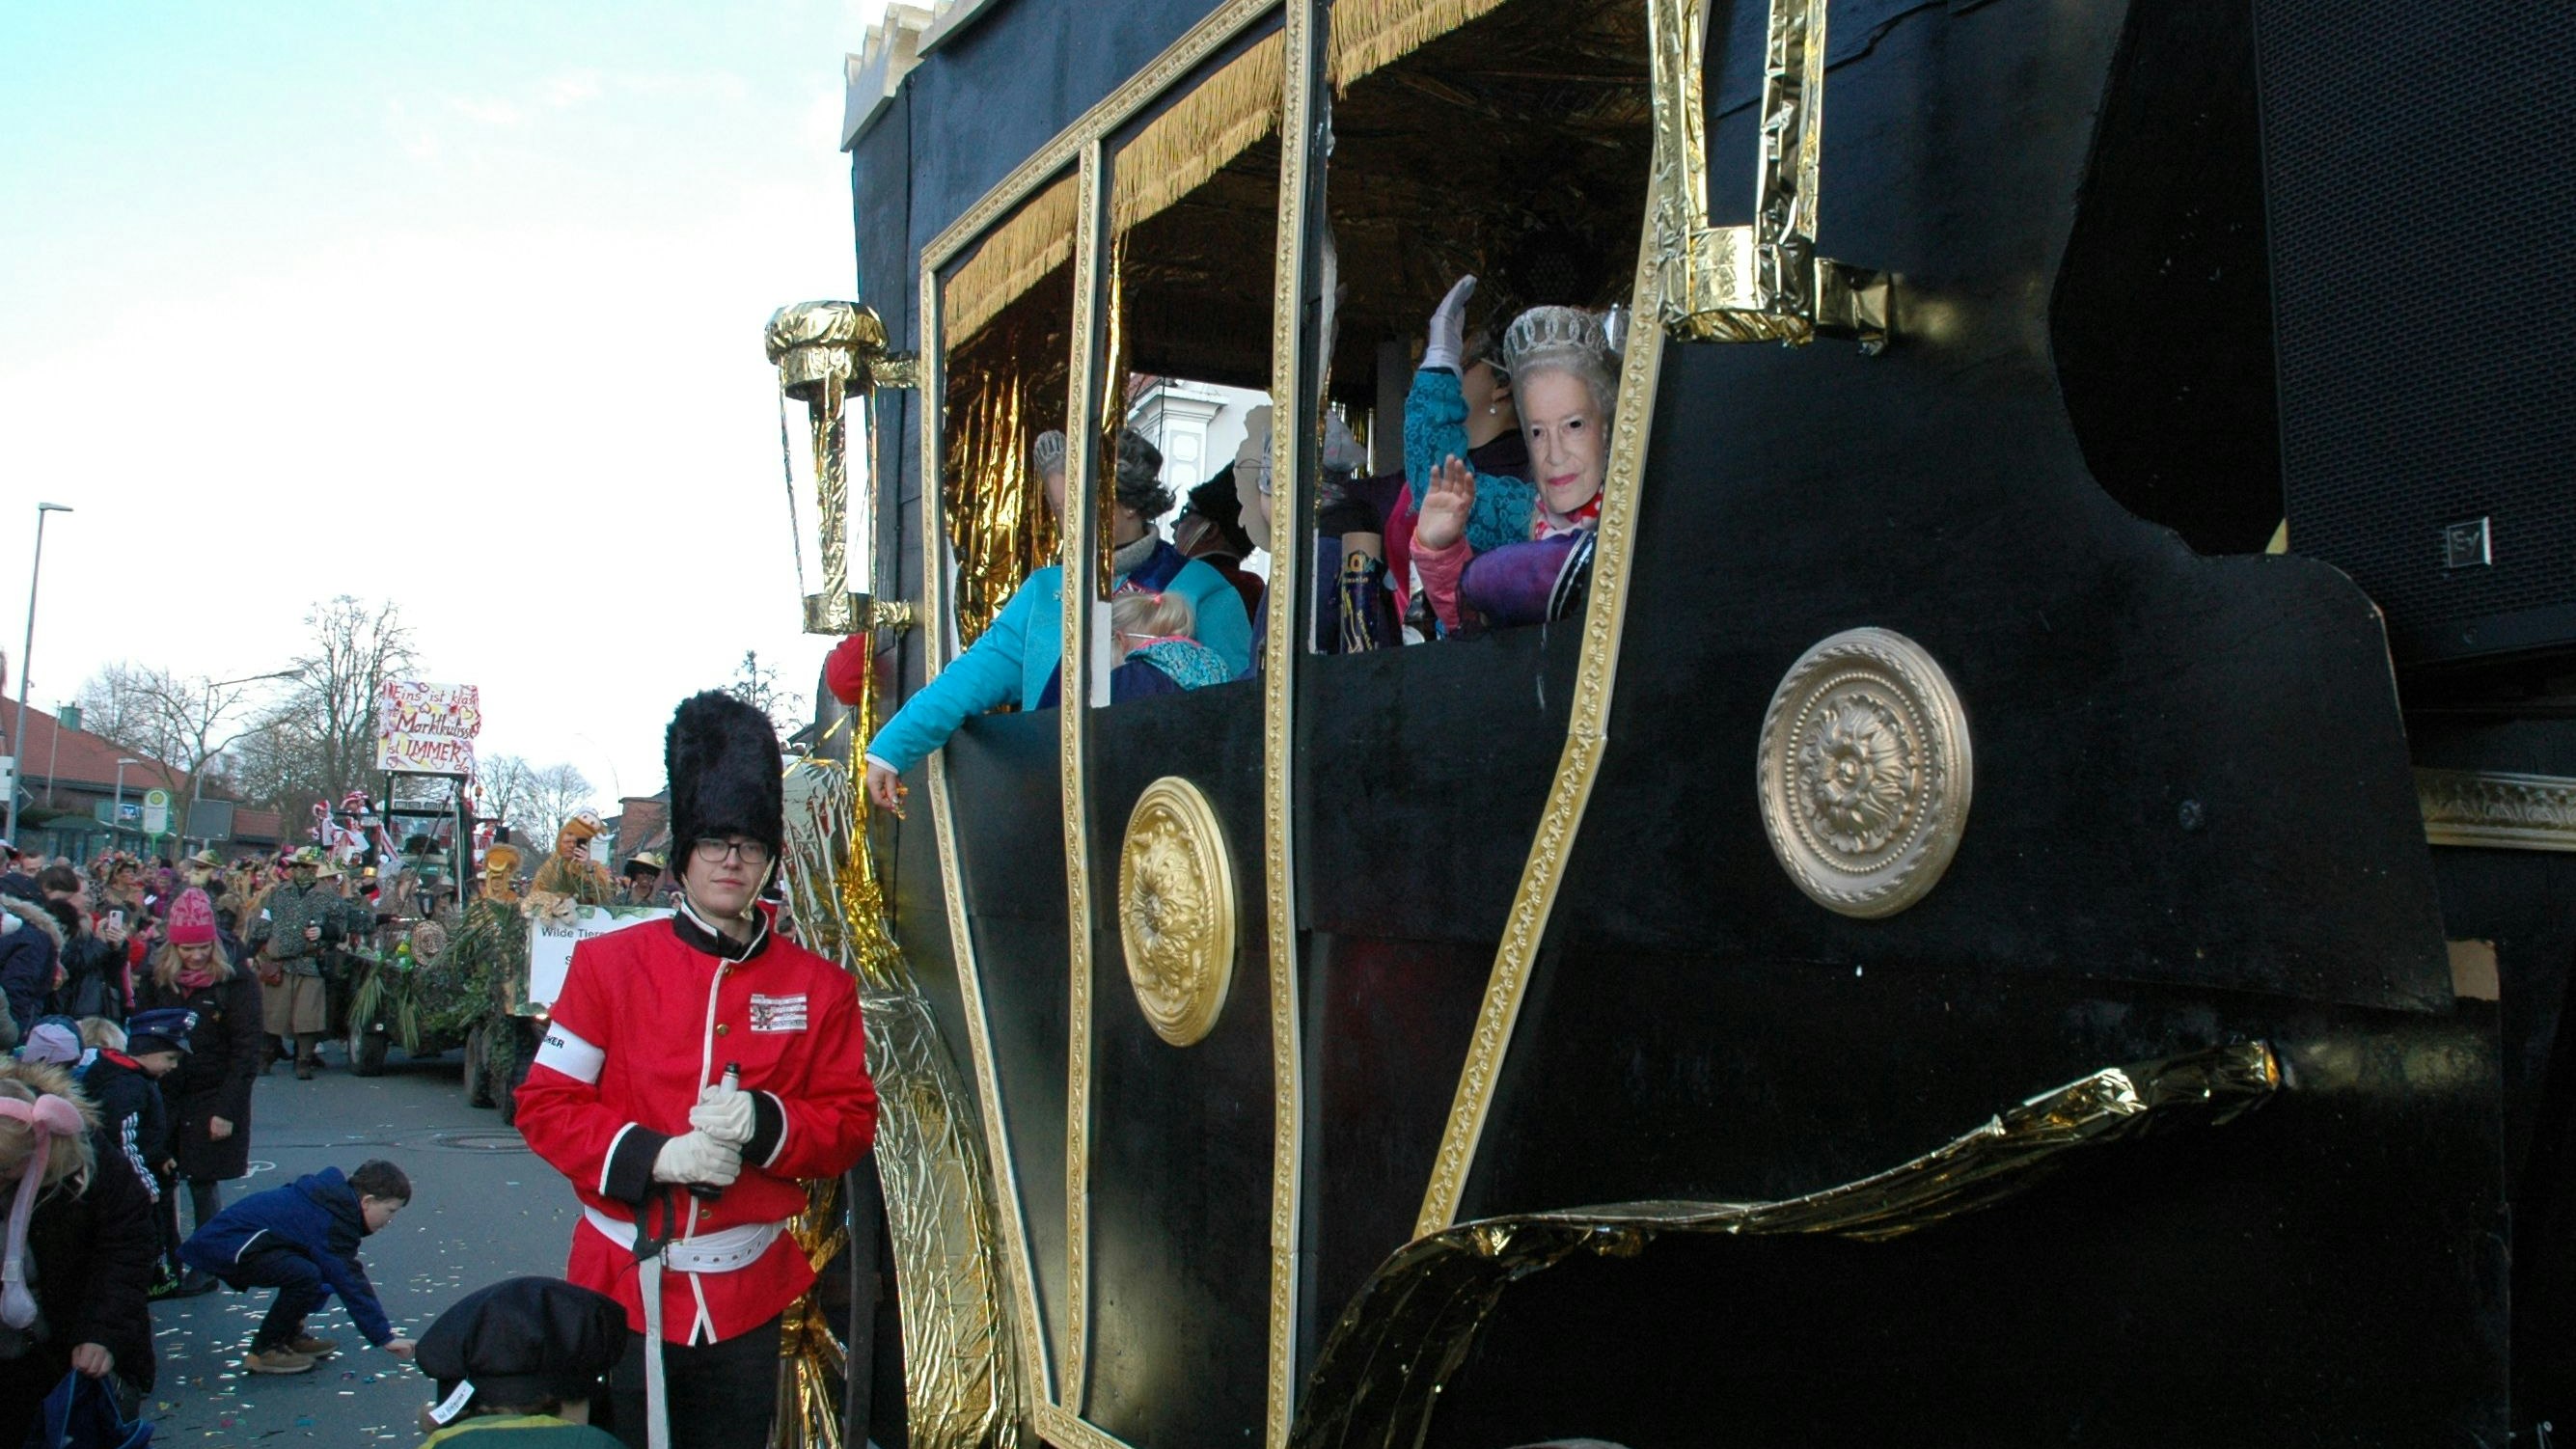 Regiert in Goldenstedt posthum weiter: Queen Elizabeth winkt aus dem preisgekrönten Themenwagen. Foto: H. Kaiser